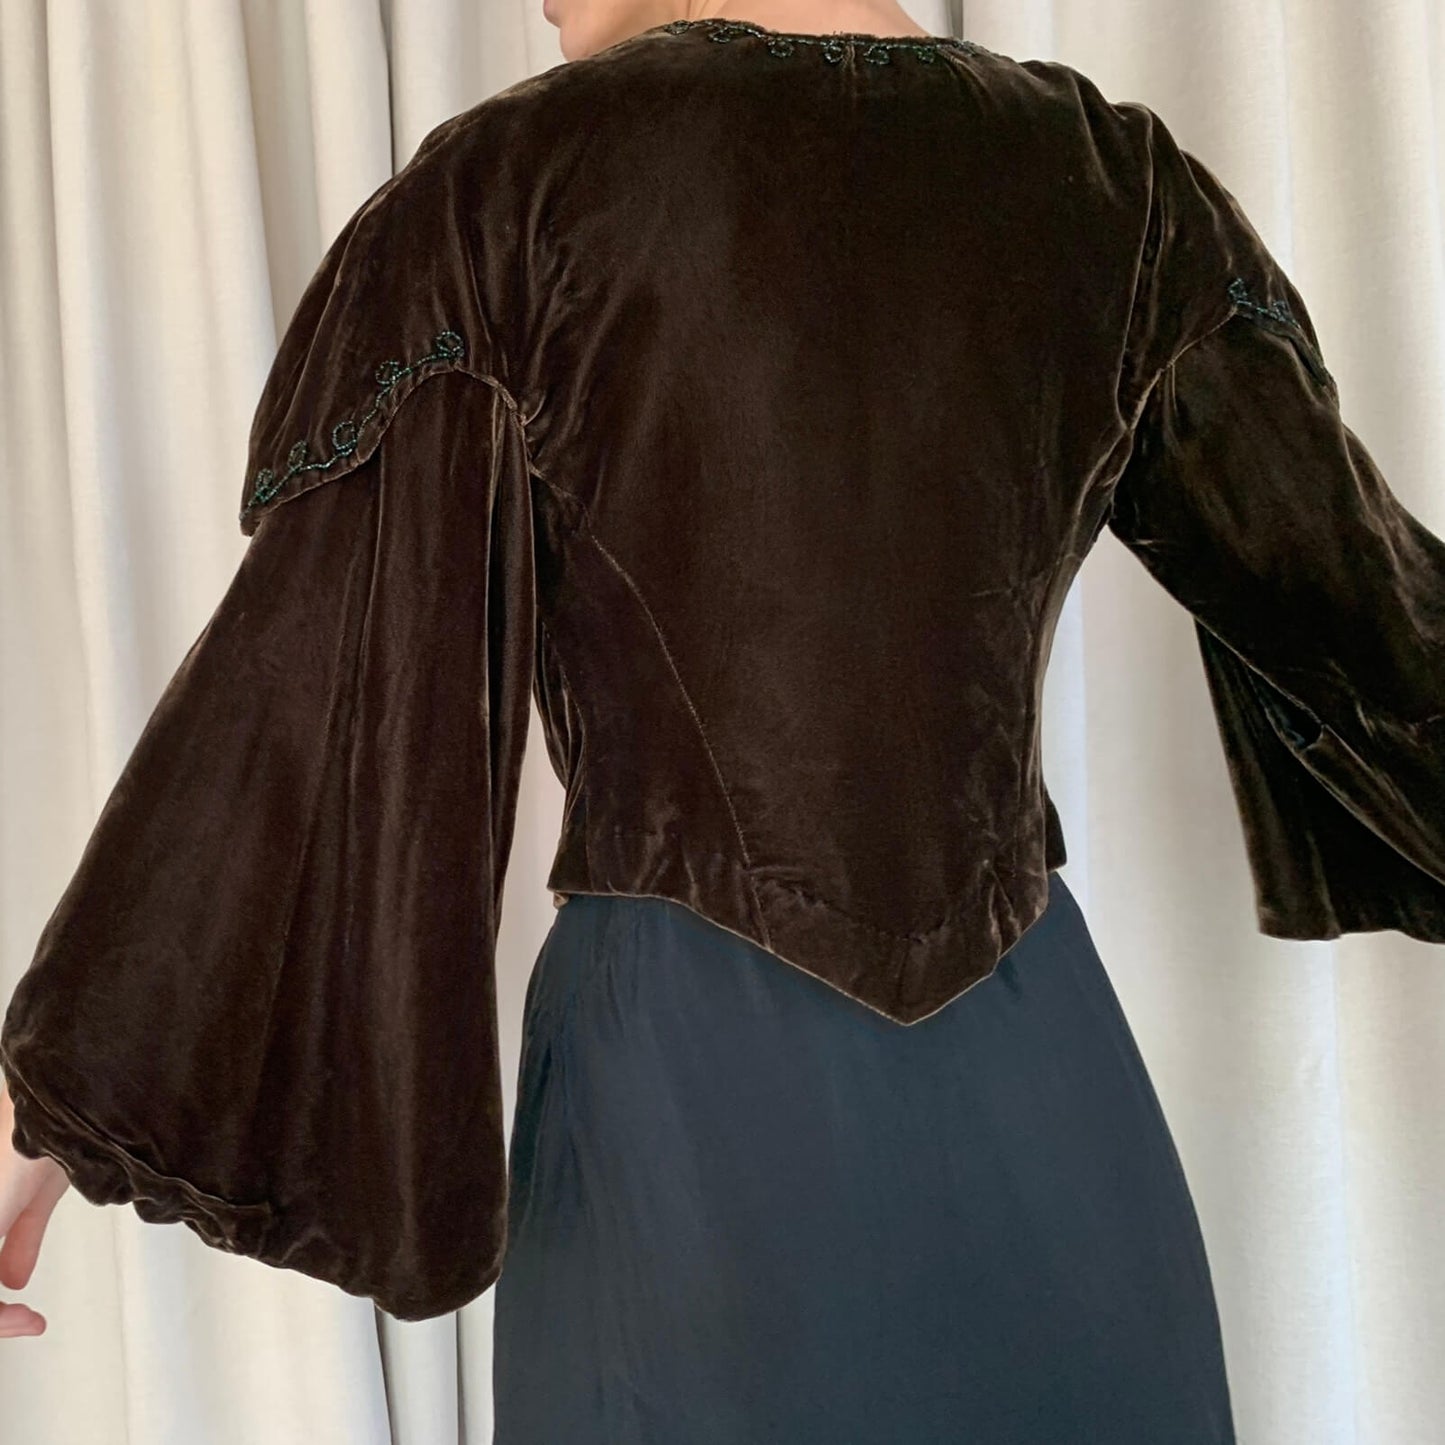 back view of the brown velvet vampire jacket